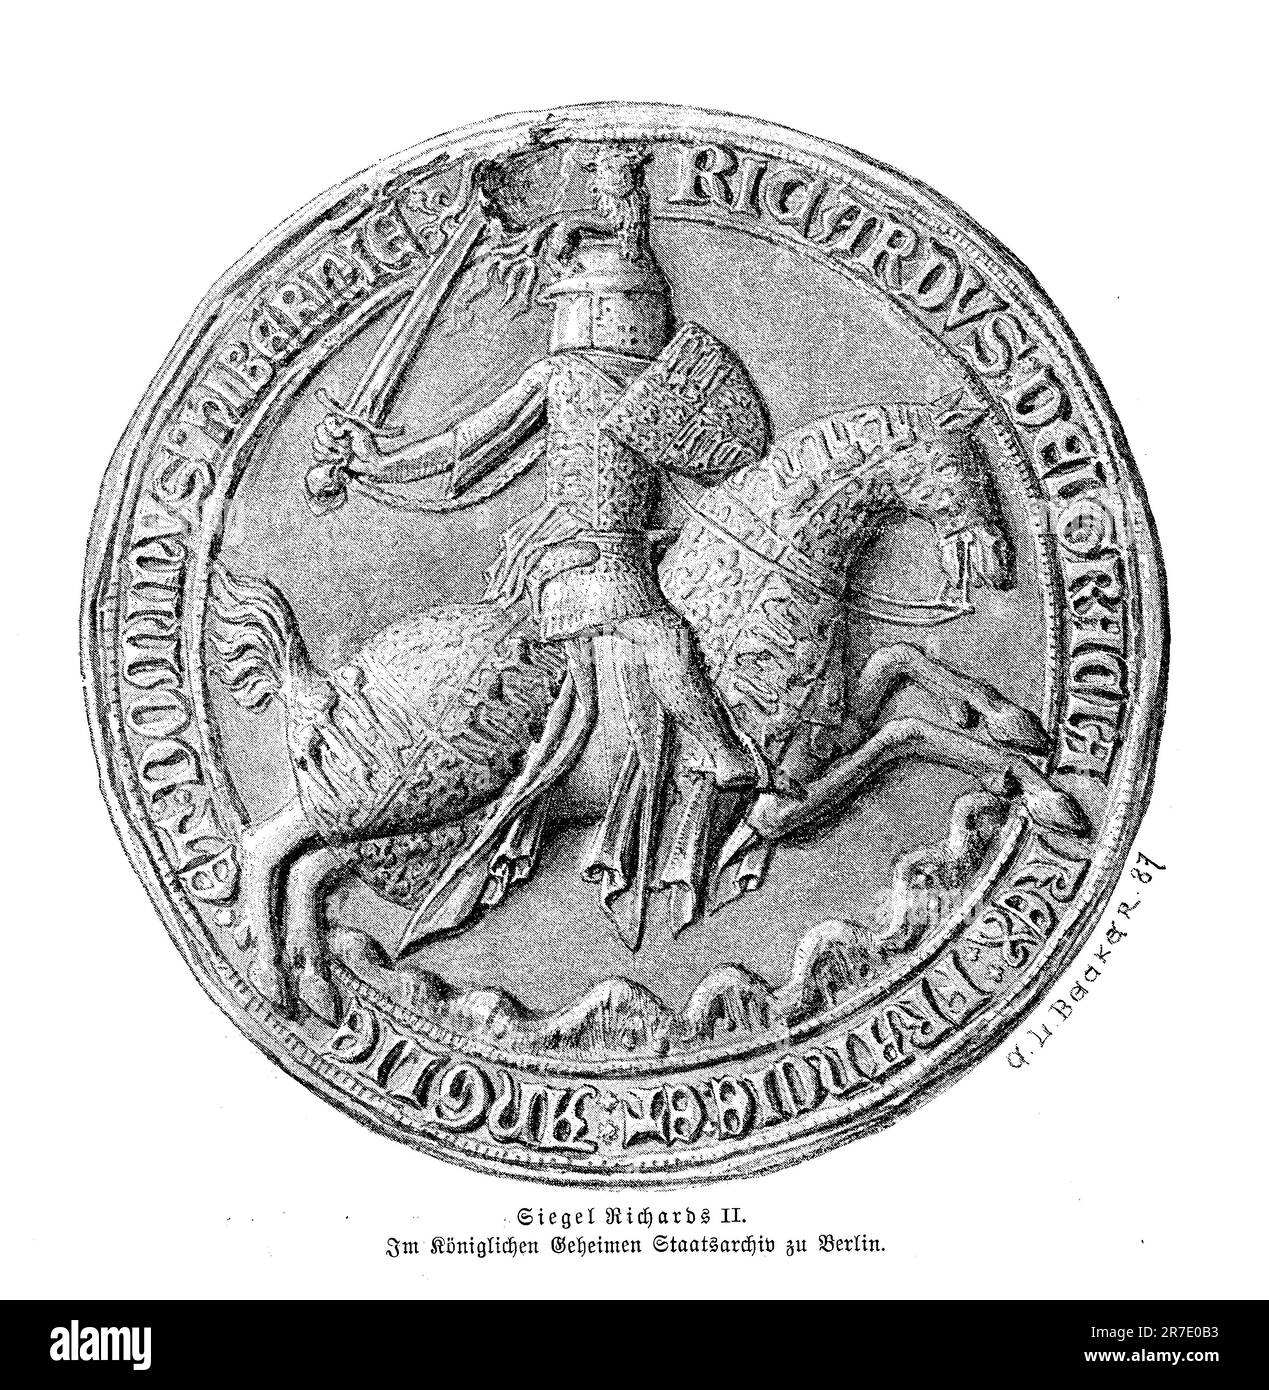 Sceau de Richard II roi d'Angleterre à 14 ans (14th siècle), représenté par William Shakespeare dans une pièce célèbre. Banque D'Images